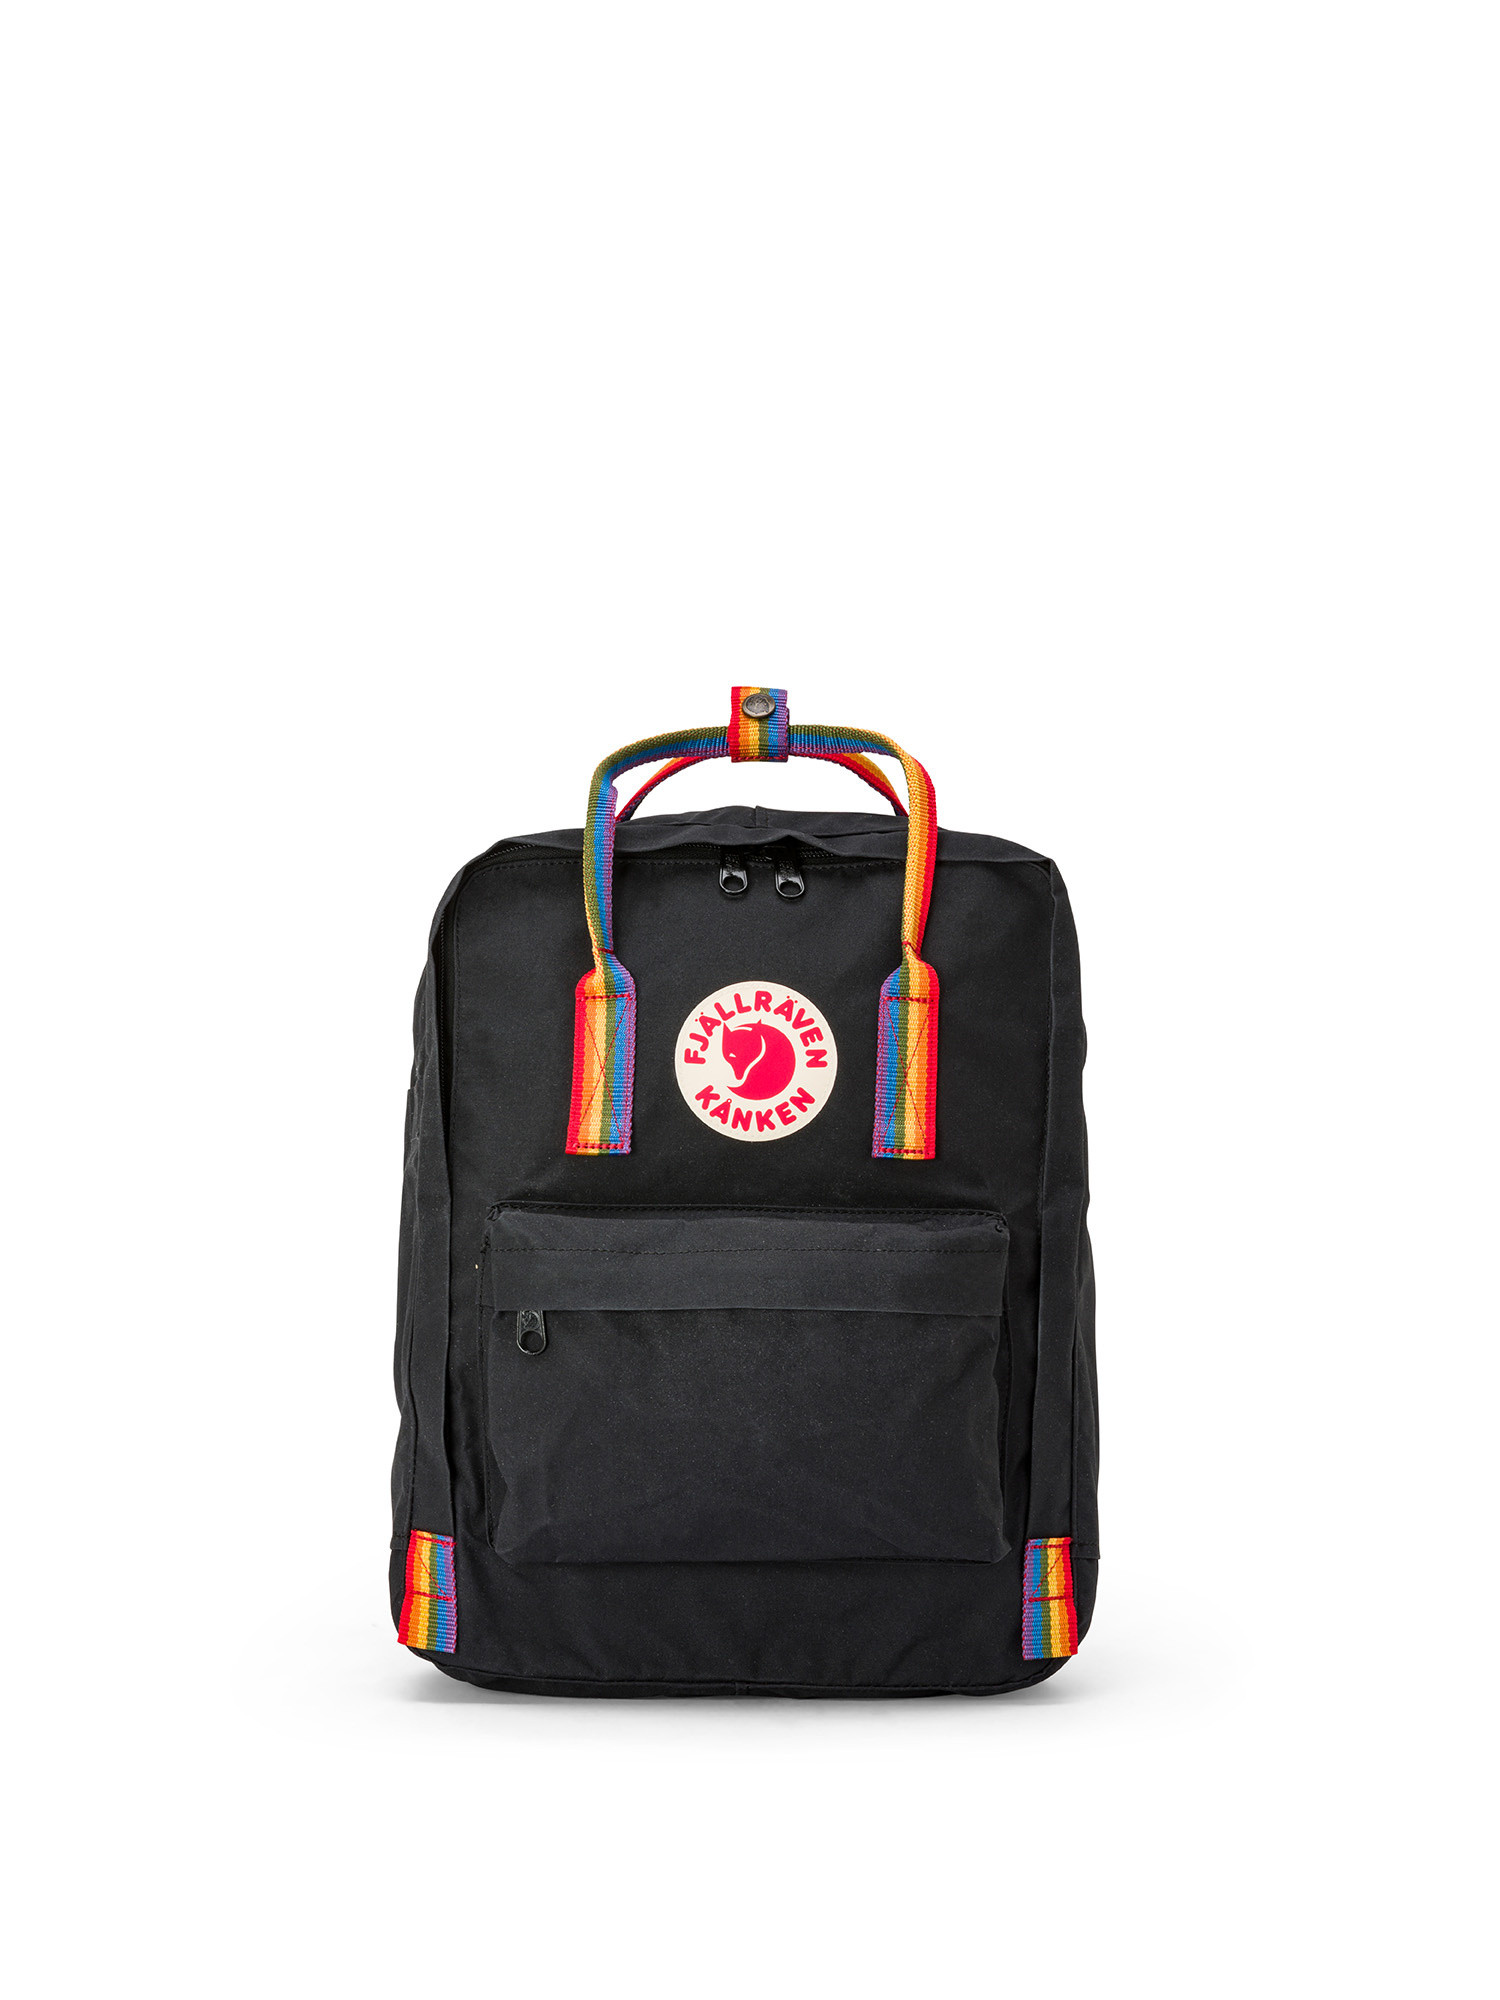 Fjallraven - Kanken Rainbow backpack, Black, large image number 0